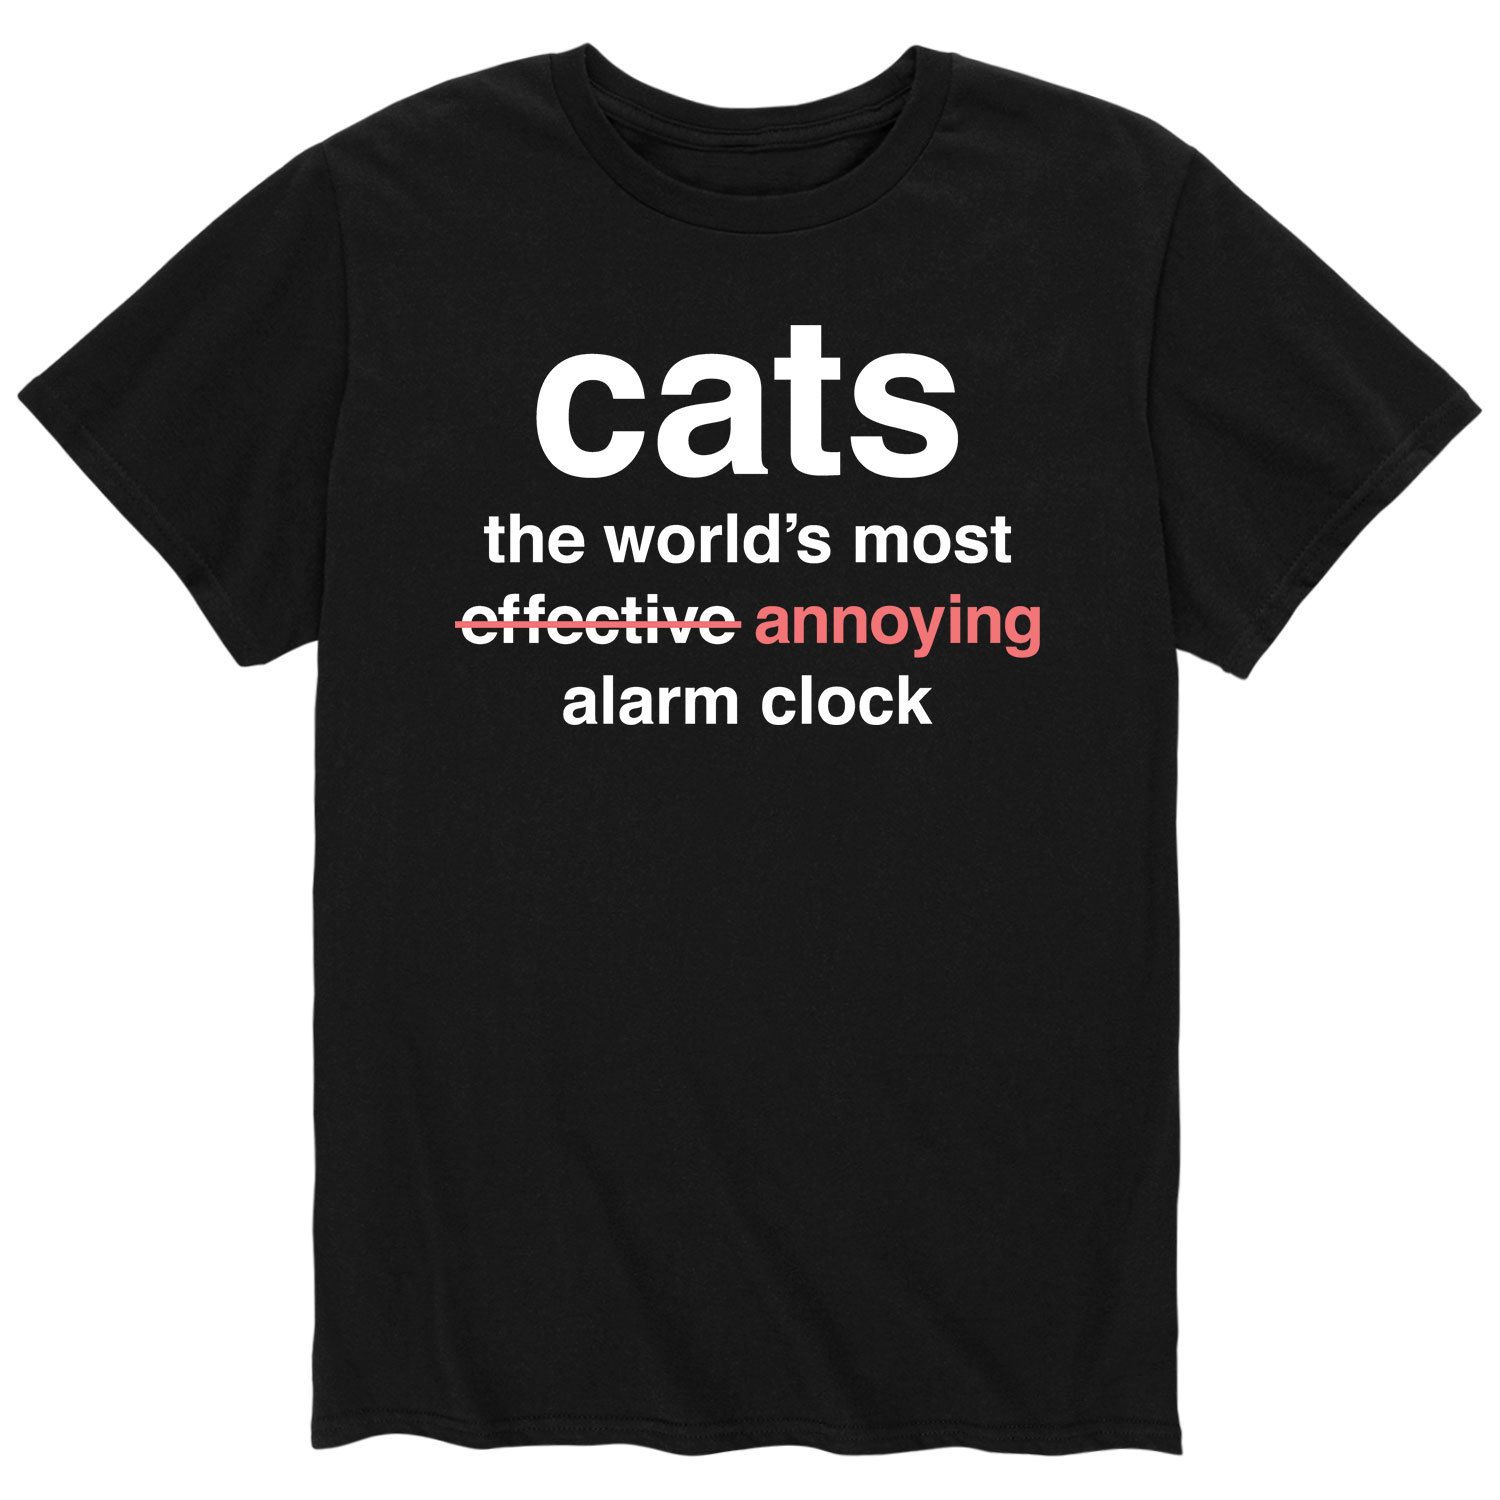 Мужская футболка с будильником Cats Worlds Licensed Character мужская футболка кот с будильником 2xl черный